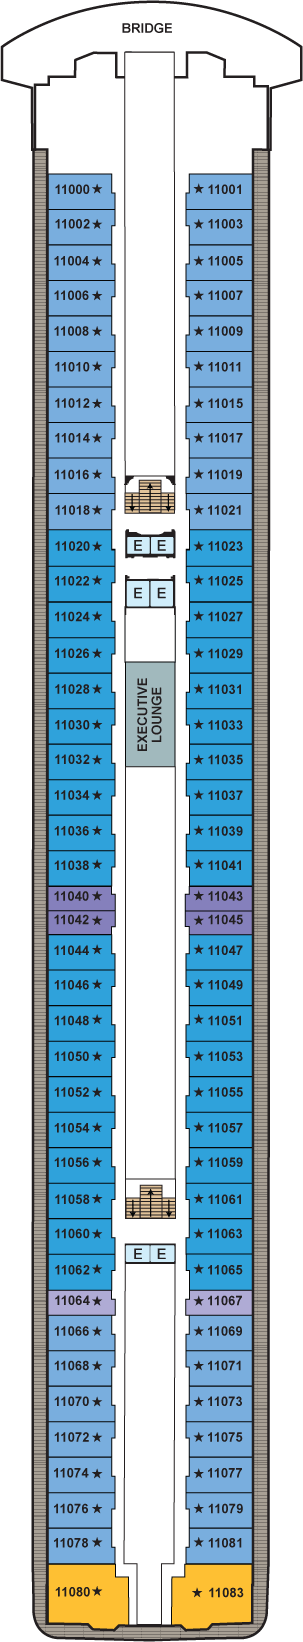 Deck 11 Deck Plan